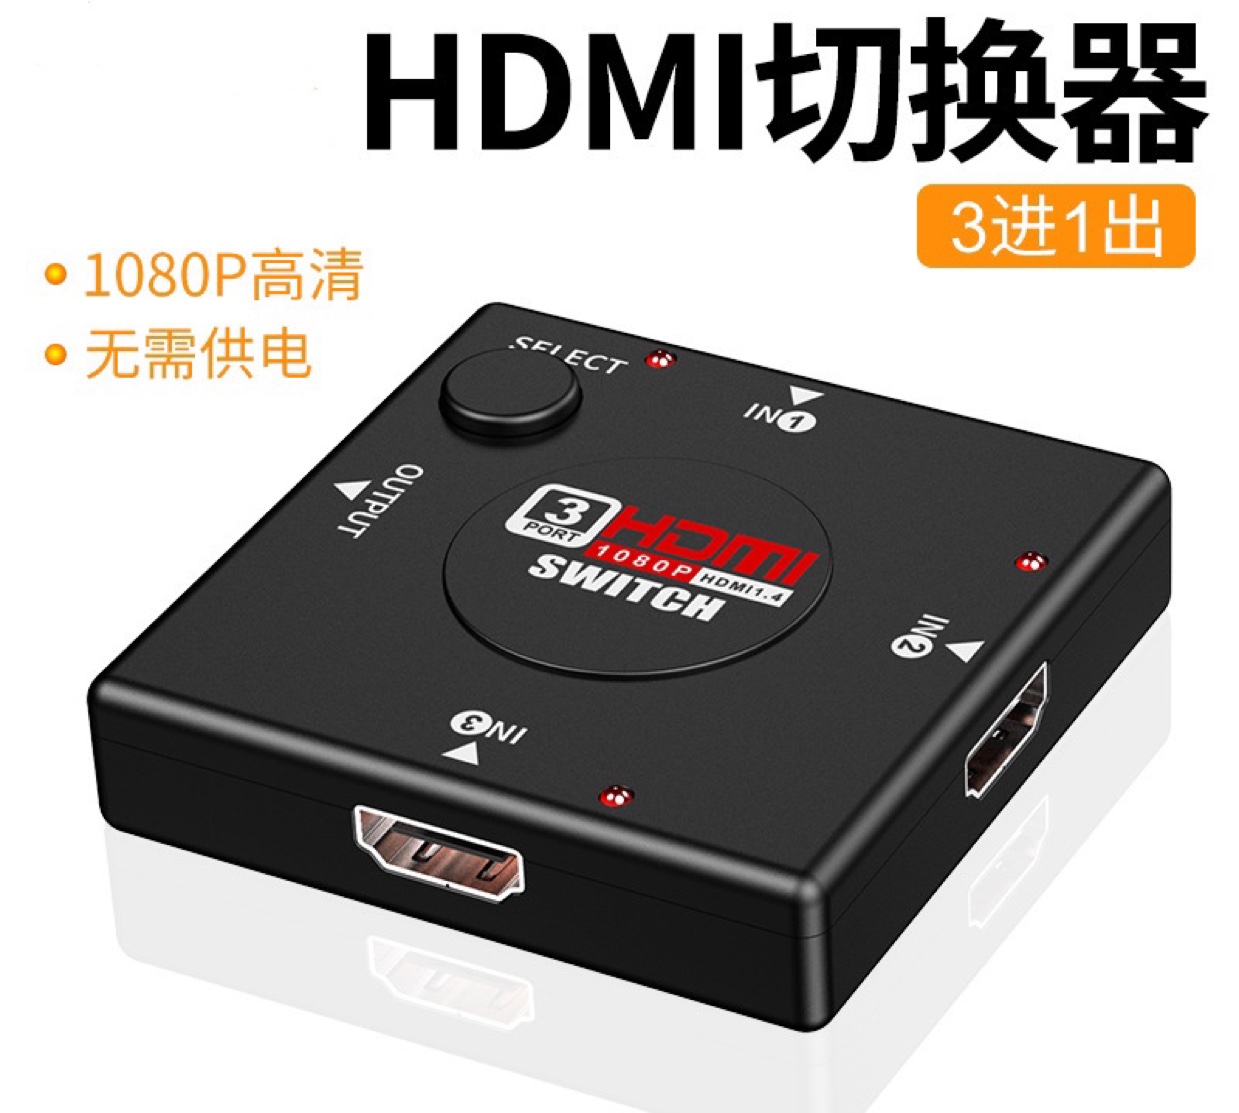 厂家直销 hdmi切换器三进一出 1080P方型款高清转换器 hdmi切换器